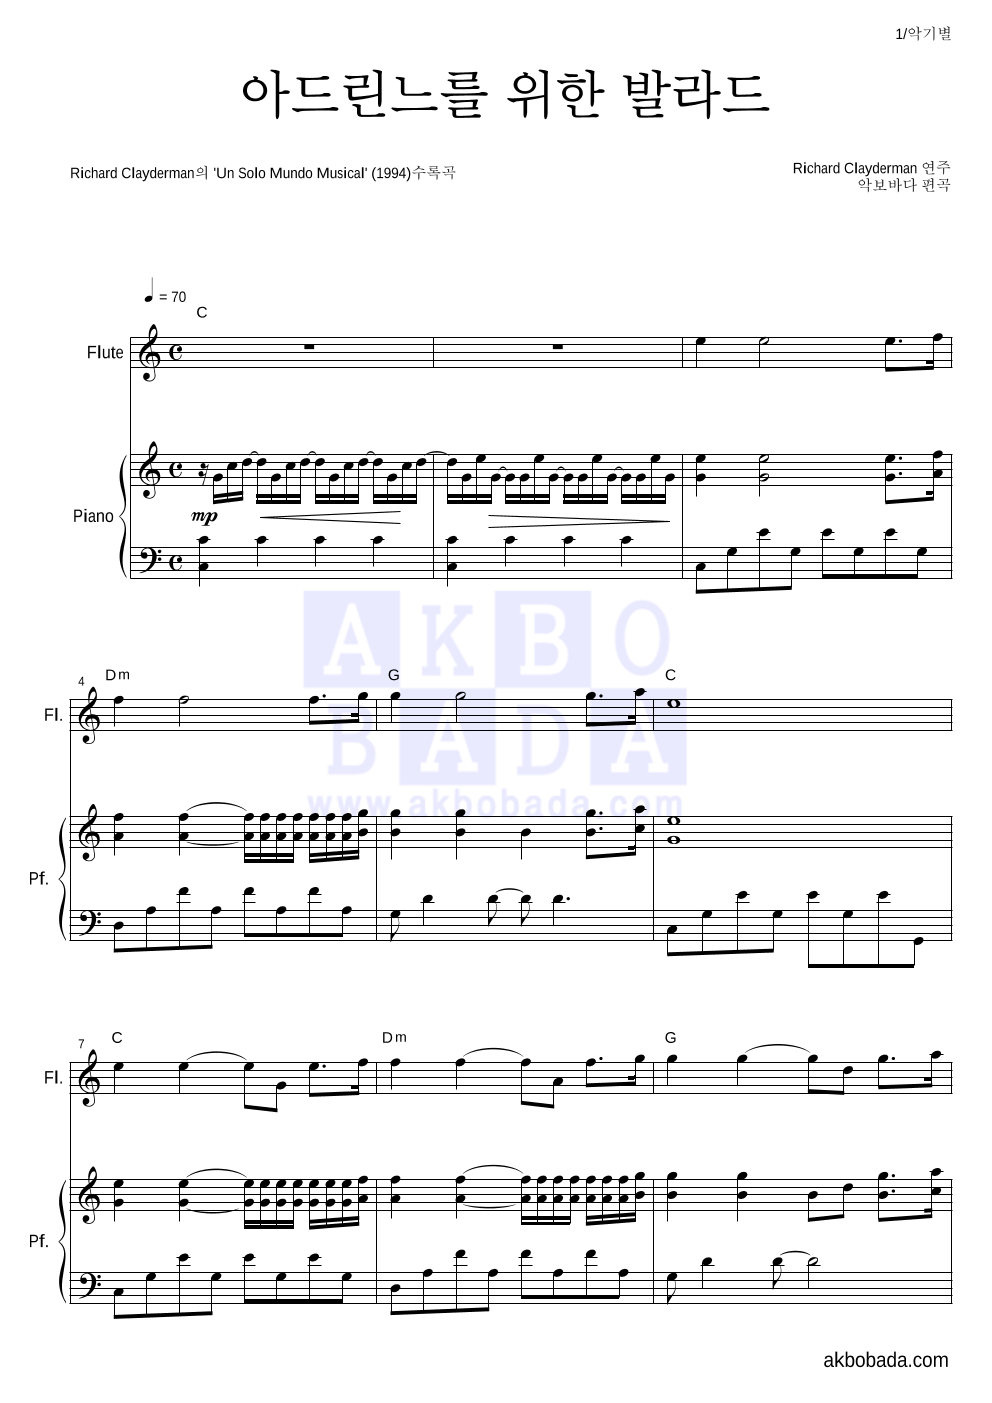 Richard Clayderman  - 아드린느를 위한 발라드 플룻&피아노 악보 